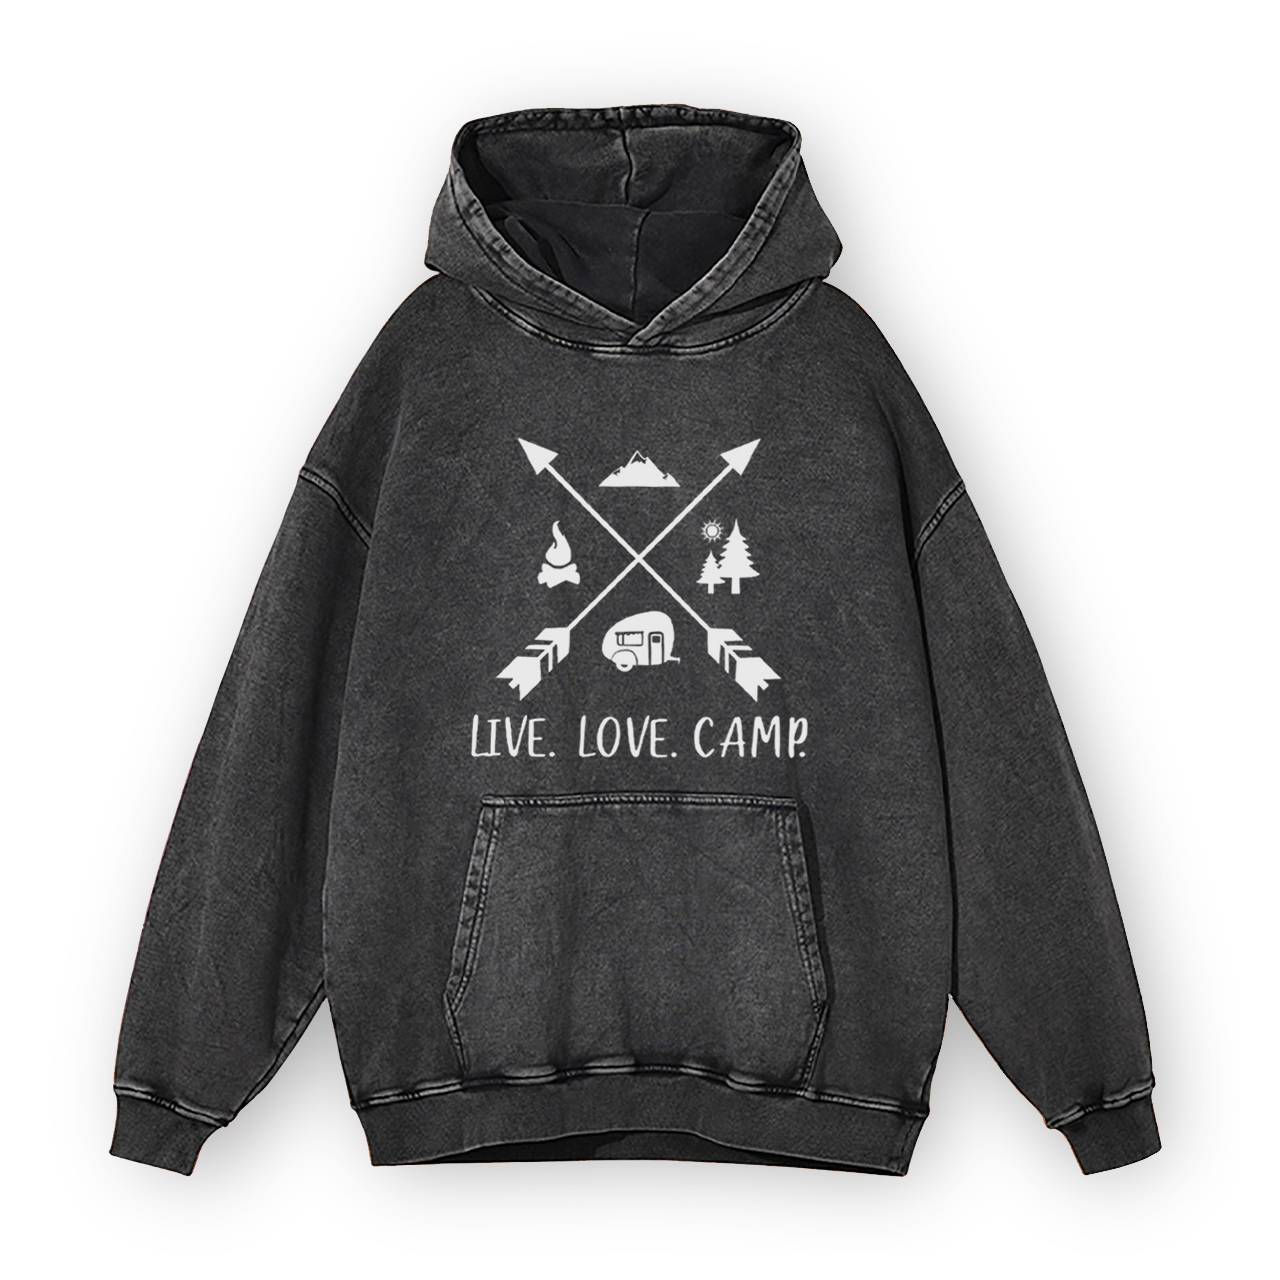 Live Love Camp Garment-Dye Hoodies